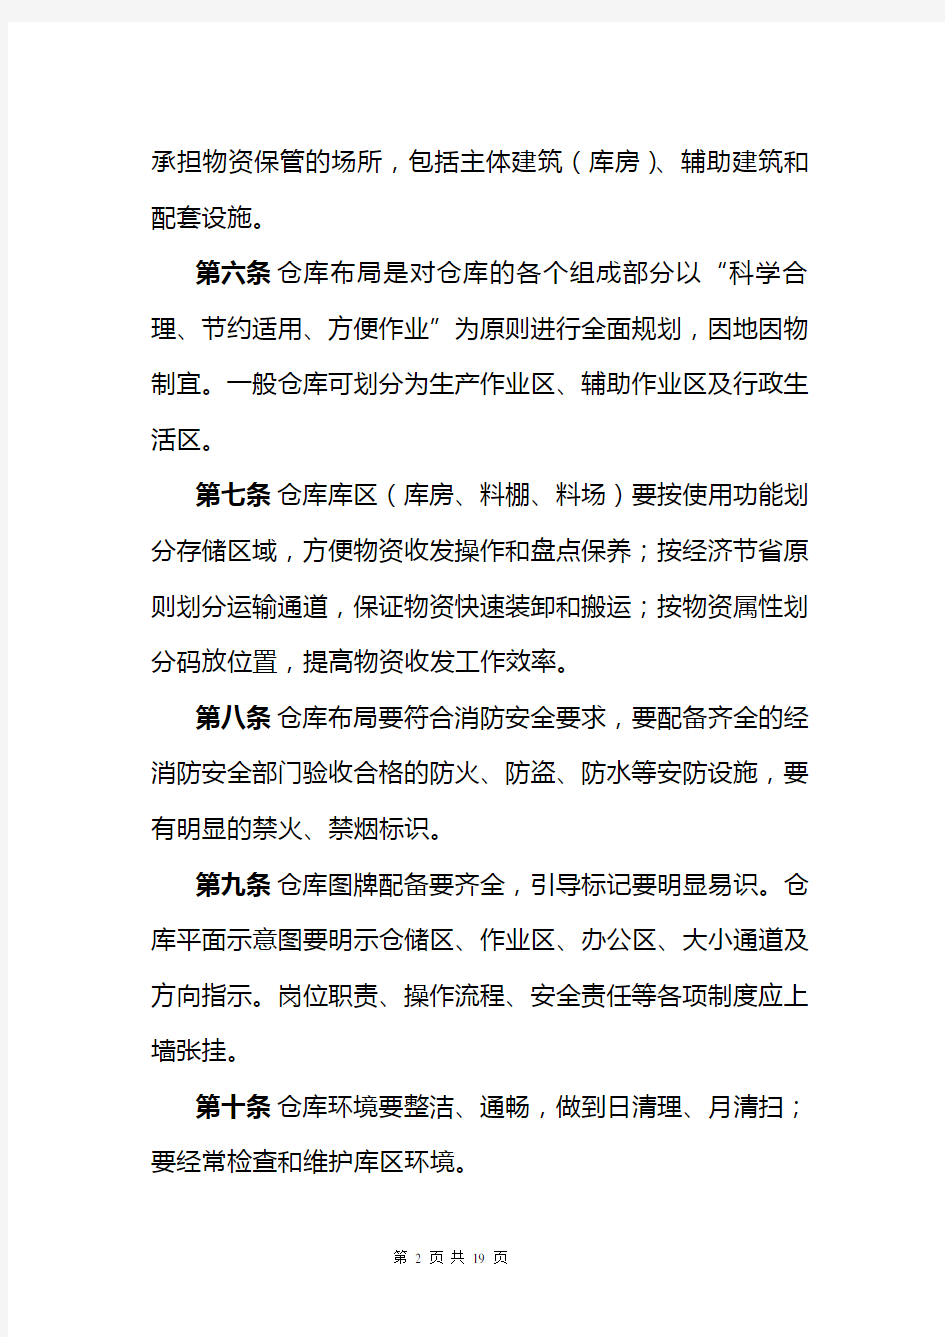 中国联通仓储标准化管理规定